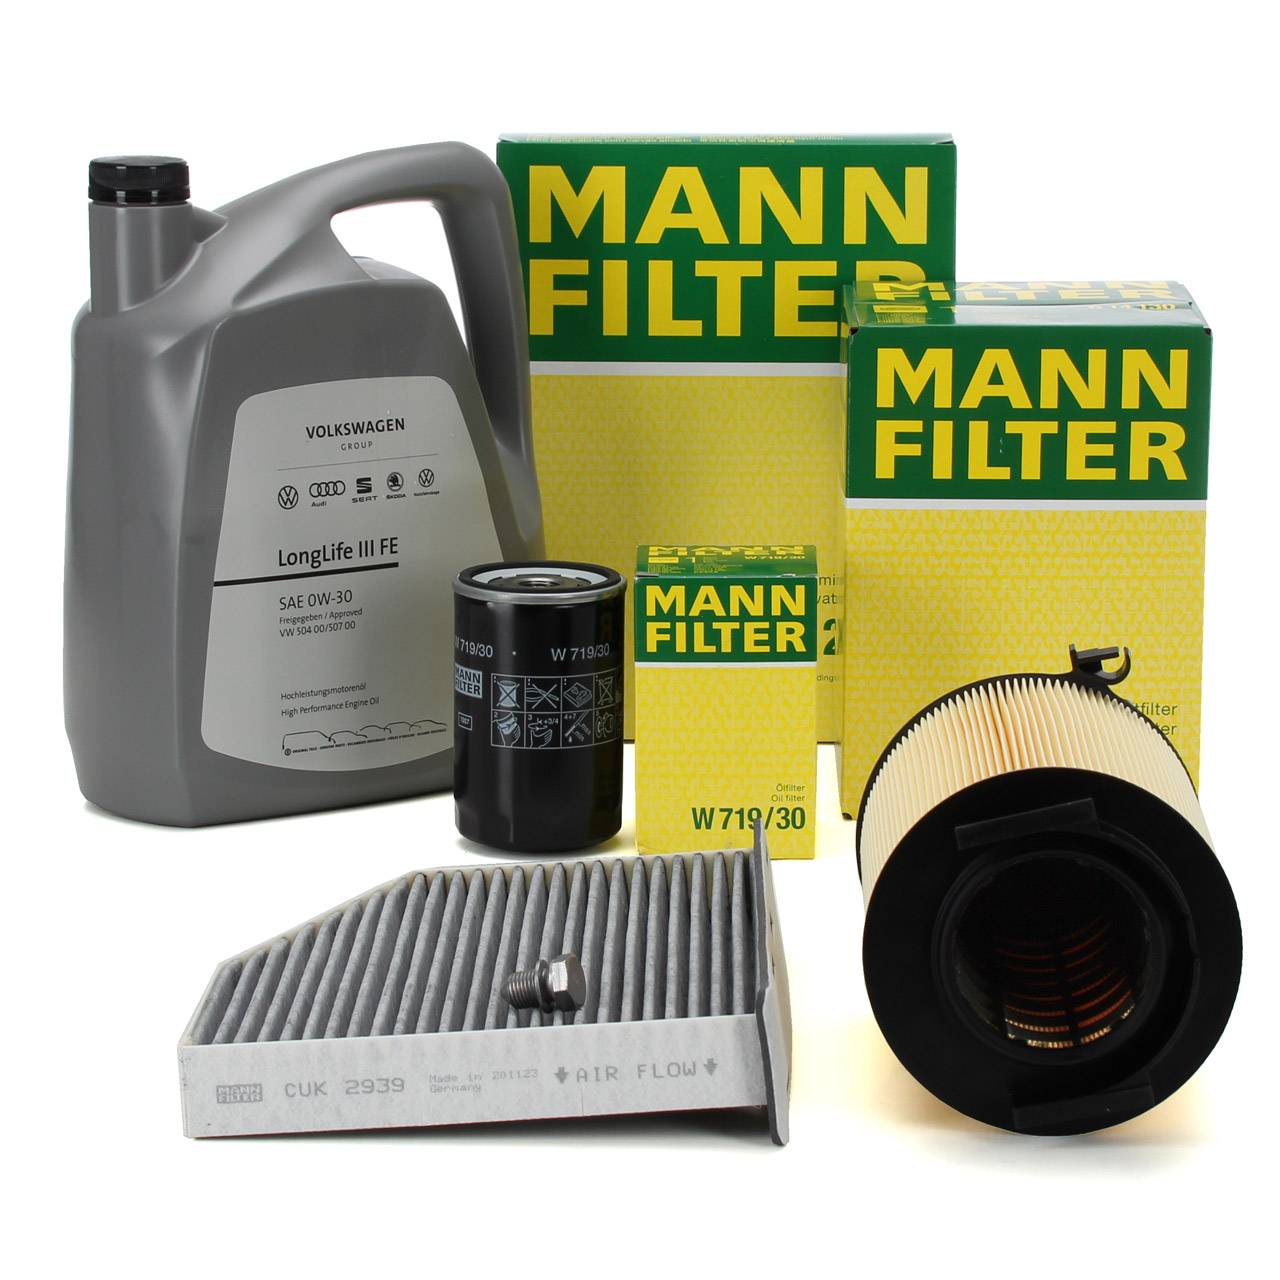 MANN Filterset + 5L ORIGINAL 0W30 Motoröl VW Golf 5 6 Passat B6 Touran AUDI A3 8P 1.6 2.0